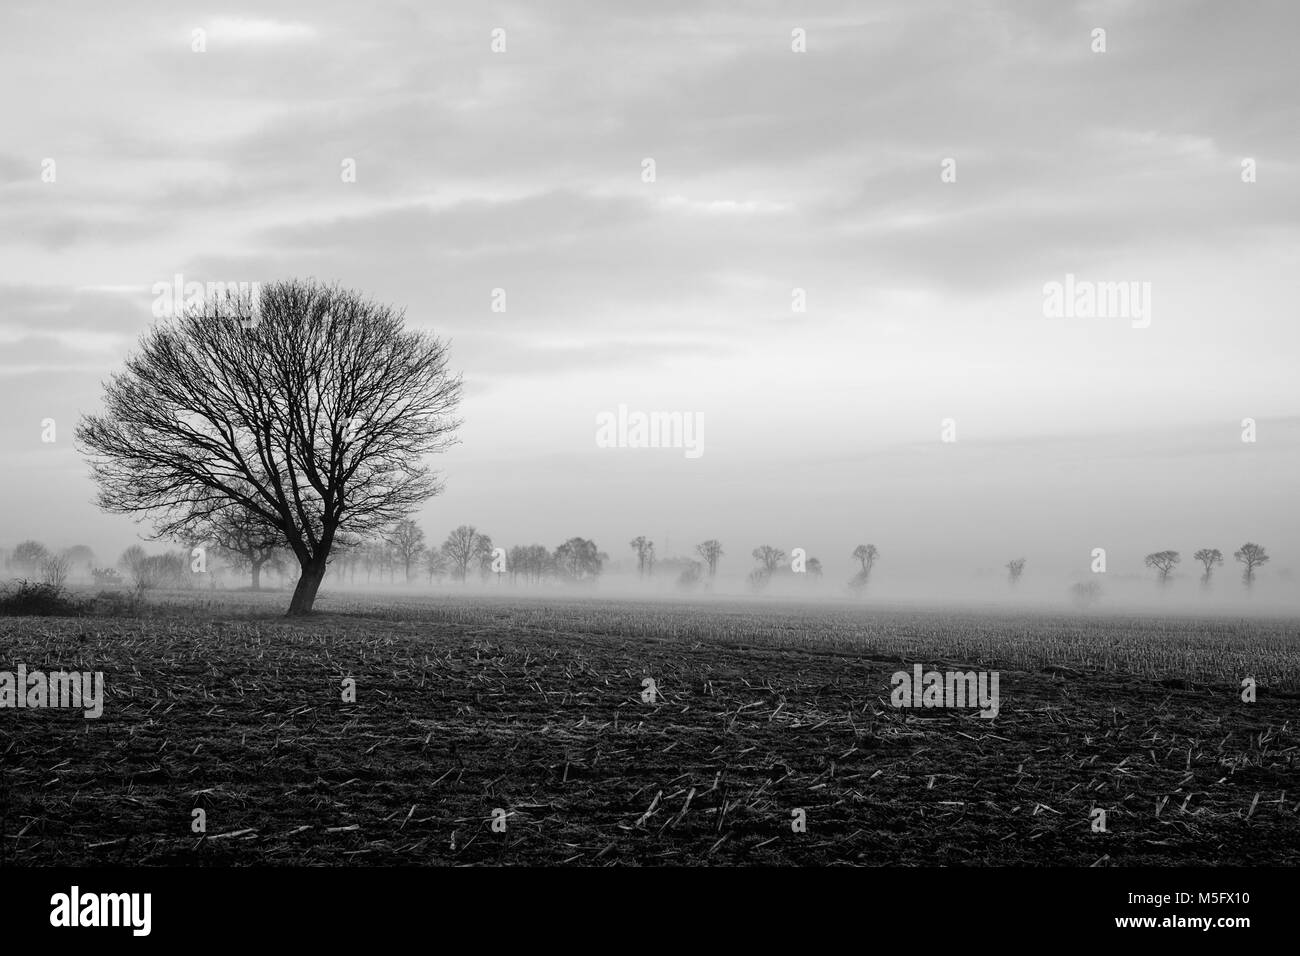 Image en noir et blanc d'un seul arbre sur un champ avec un ciel d'orage sur un paysage rural landscape Banque D'Images